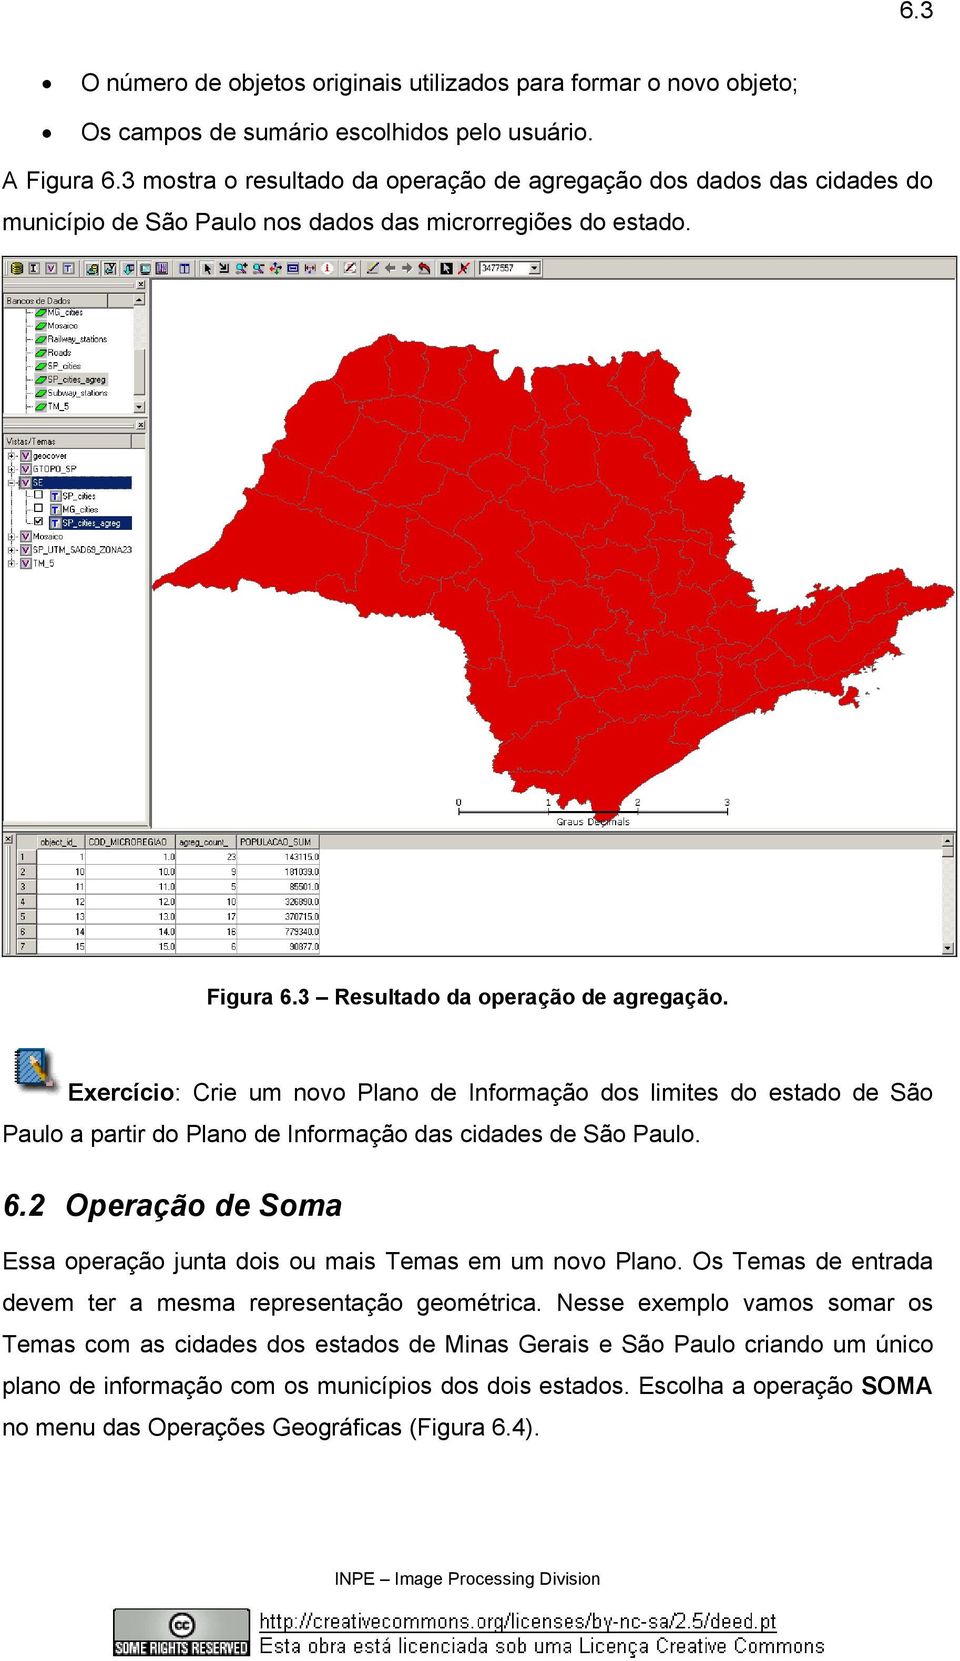 Exercício: Crie um novo Plano de Informação dos limites do estado de São Paulo a partir do Plano de Informação das cidades de São Paulo. 6.